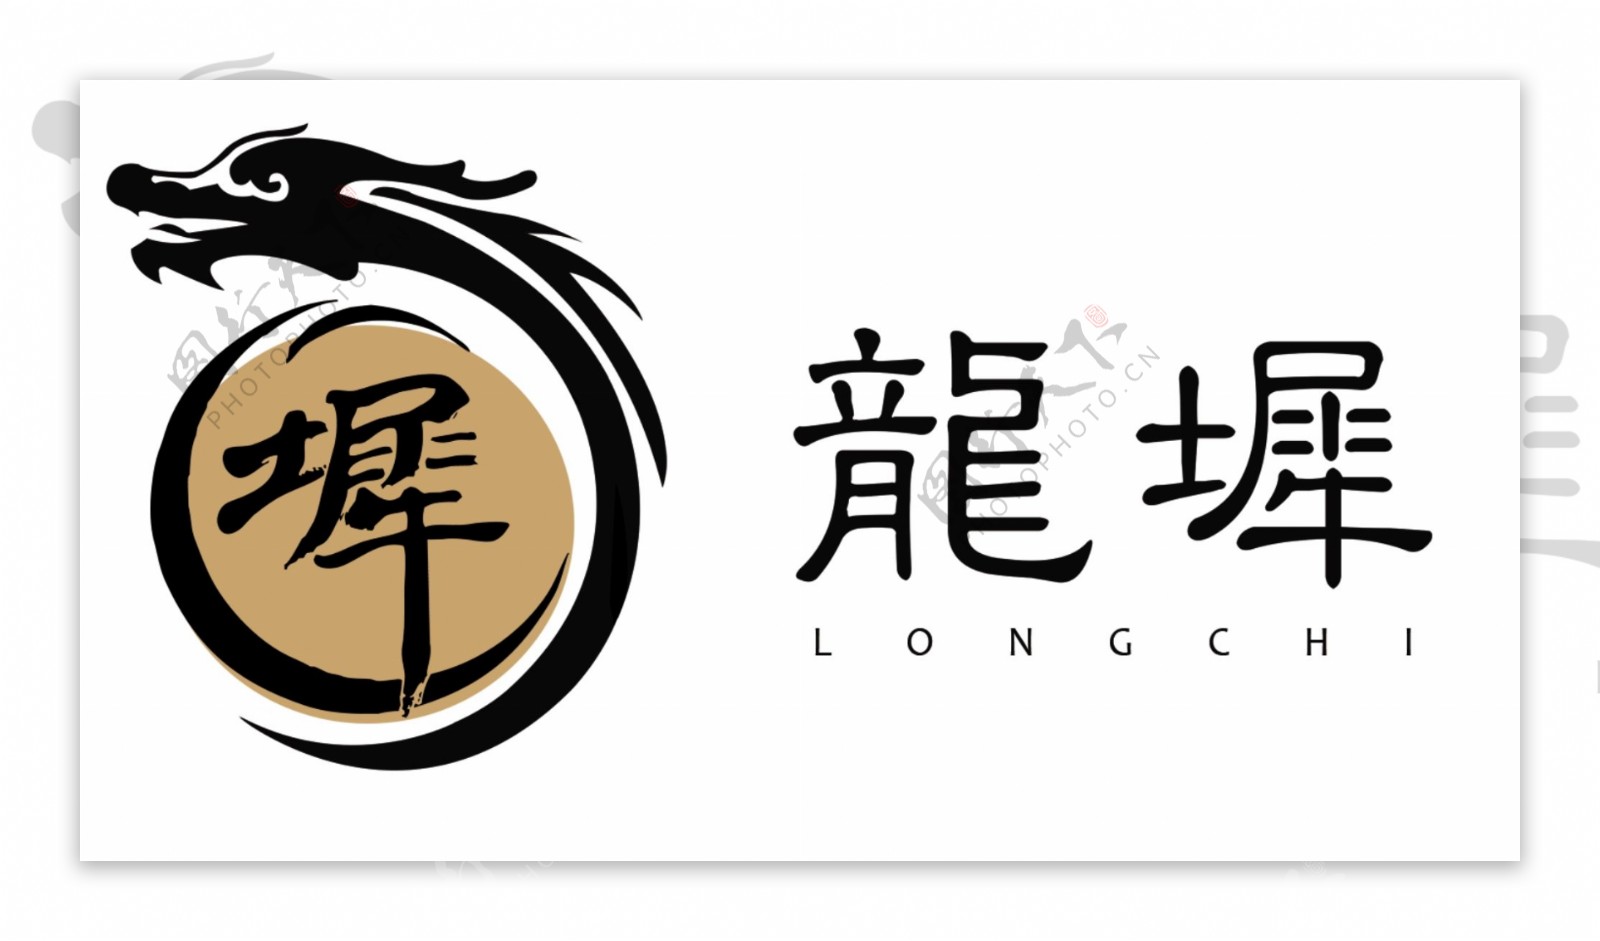 龙犀logo图片